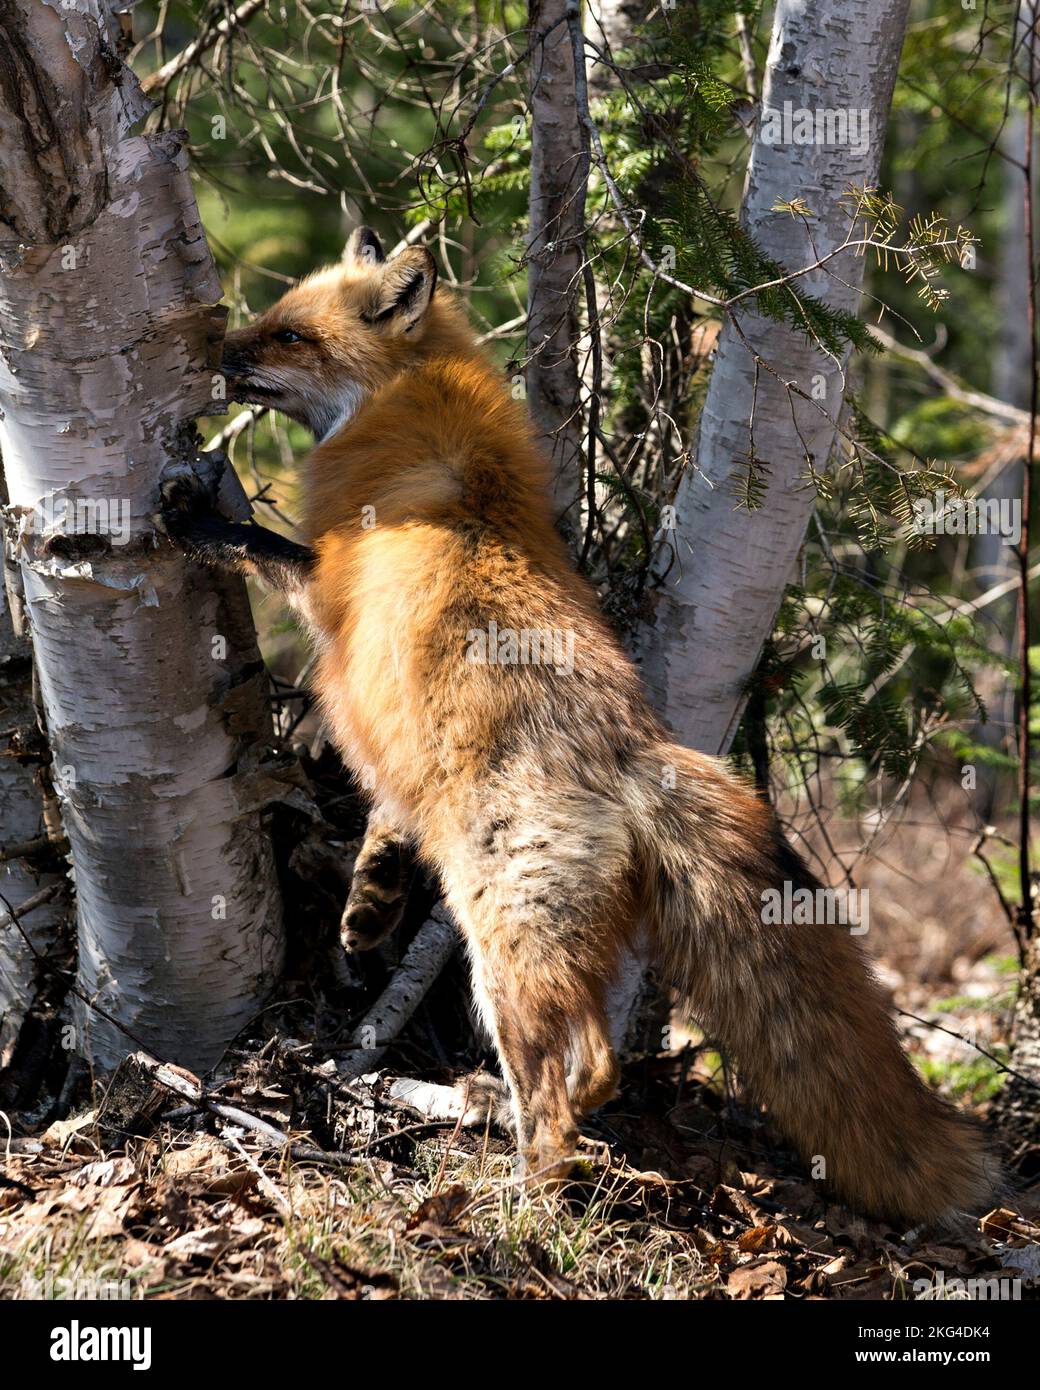 Profil de renard roux en gros plan debout sur un bouleau à la recherche de sa proie au printemps avec queue de renard, fourrure, dans son environnement et habi Banque D'Images